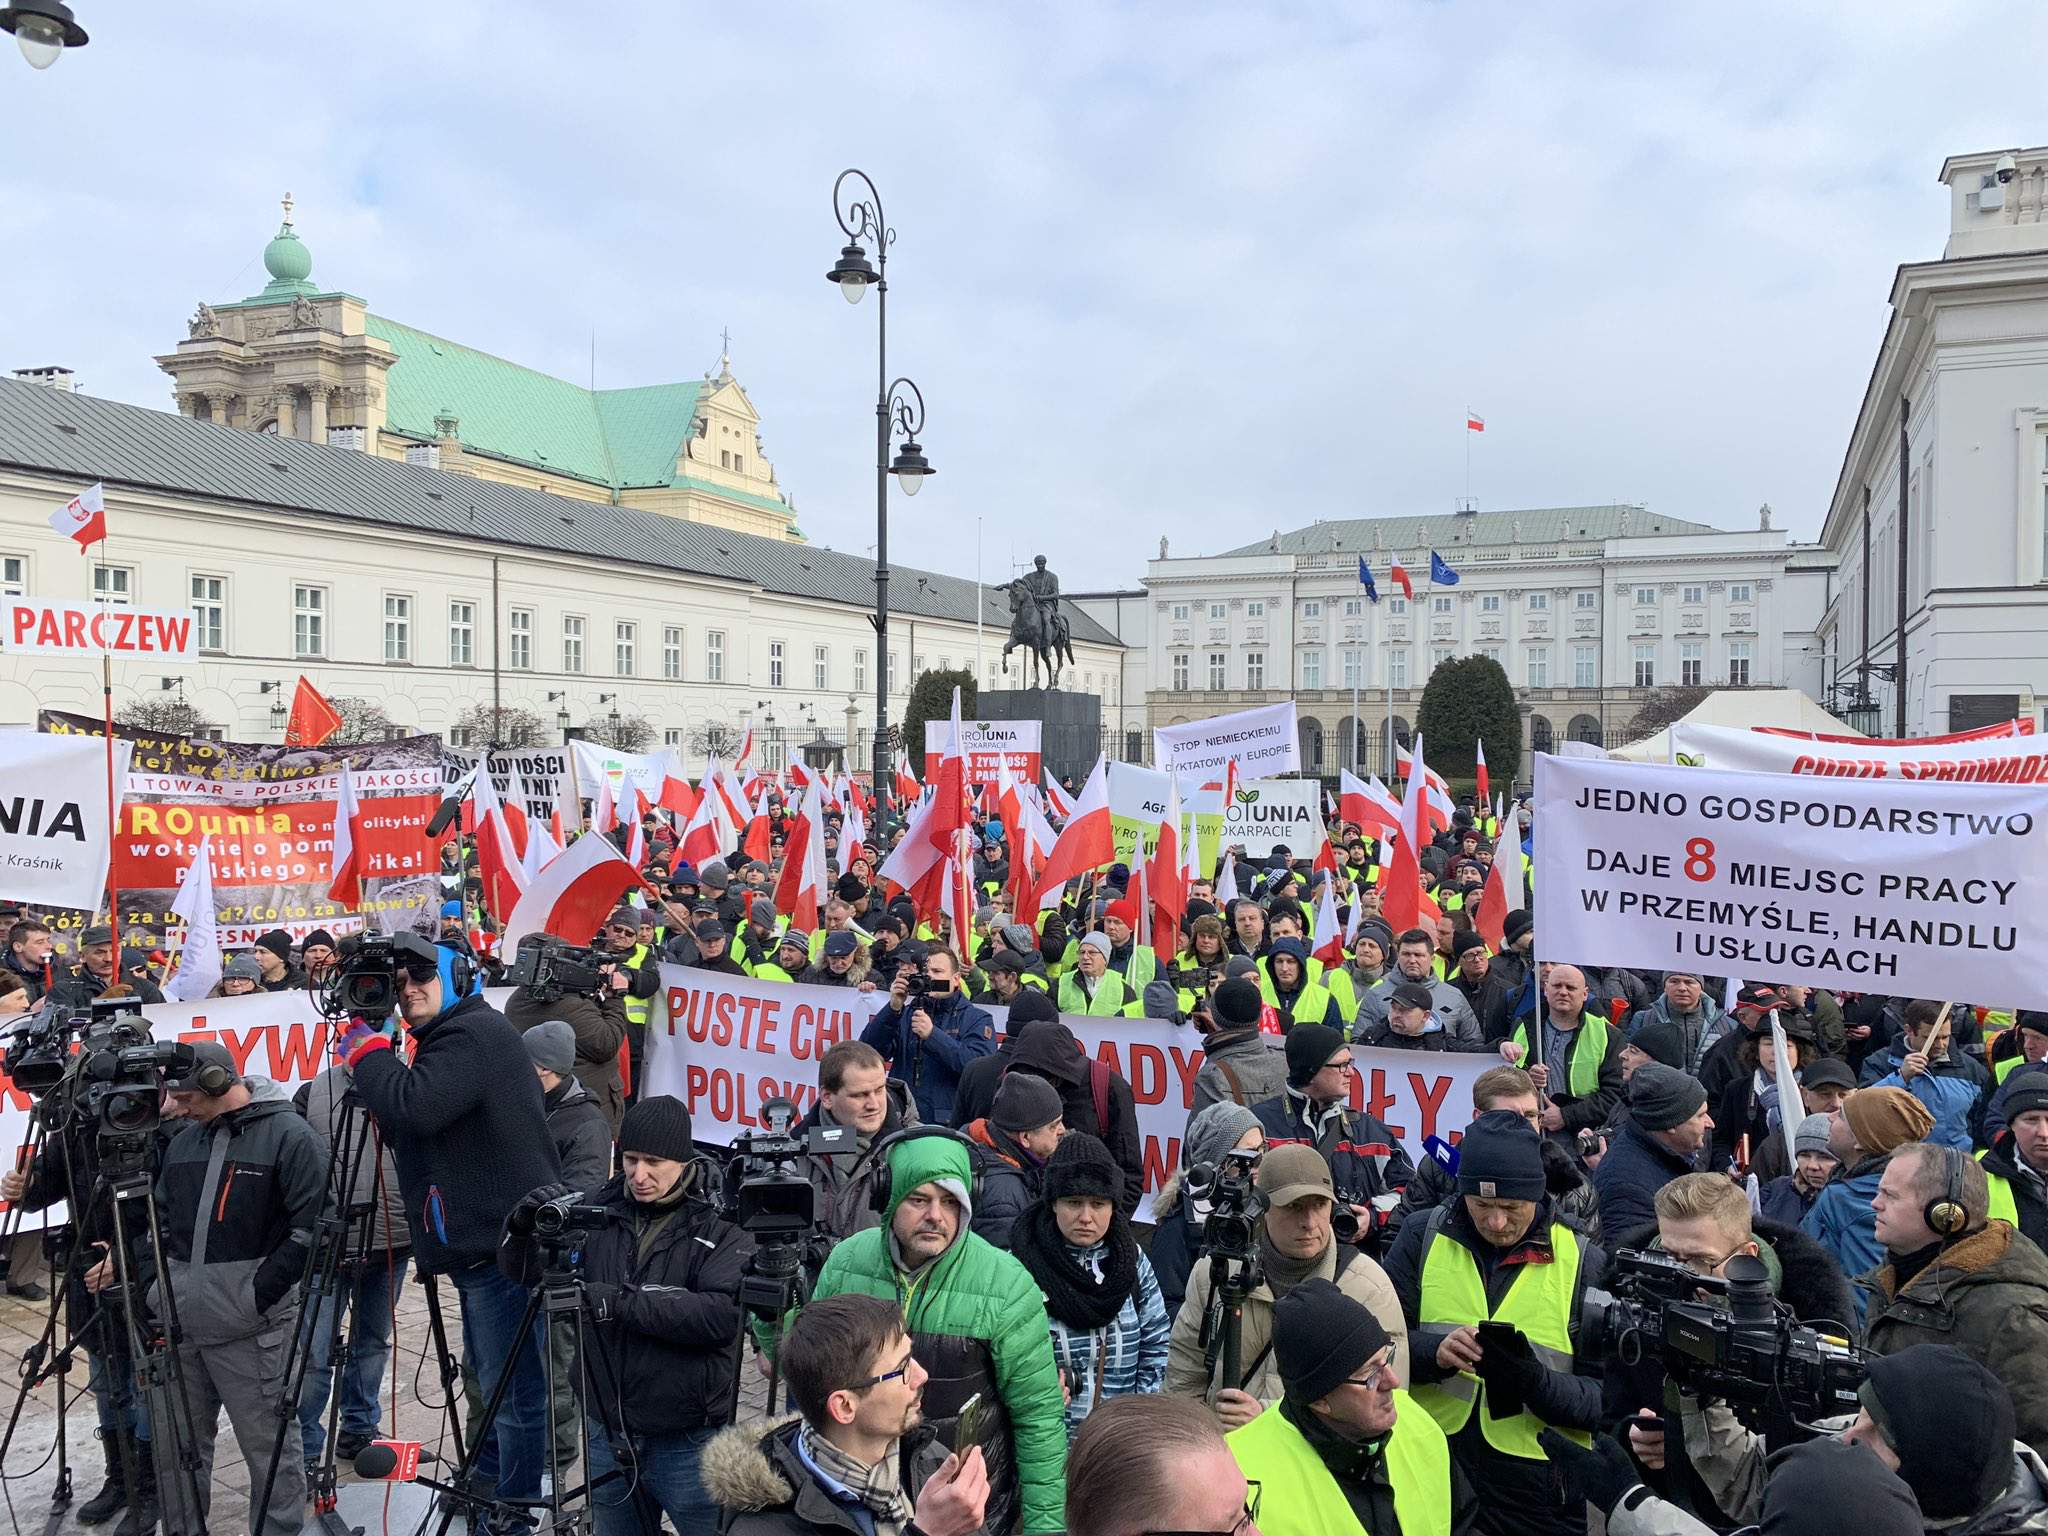 kilka tysięcy osób przyjechało do Warszawy, aby wziąć udział w proteście rolników i zamanifestować pod Pałacem Prezydenckim swój sprzeciw wobec dramatycznej sytuacji rolnictwa